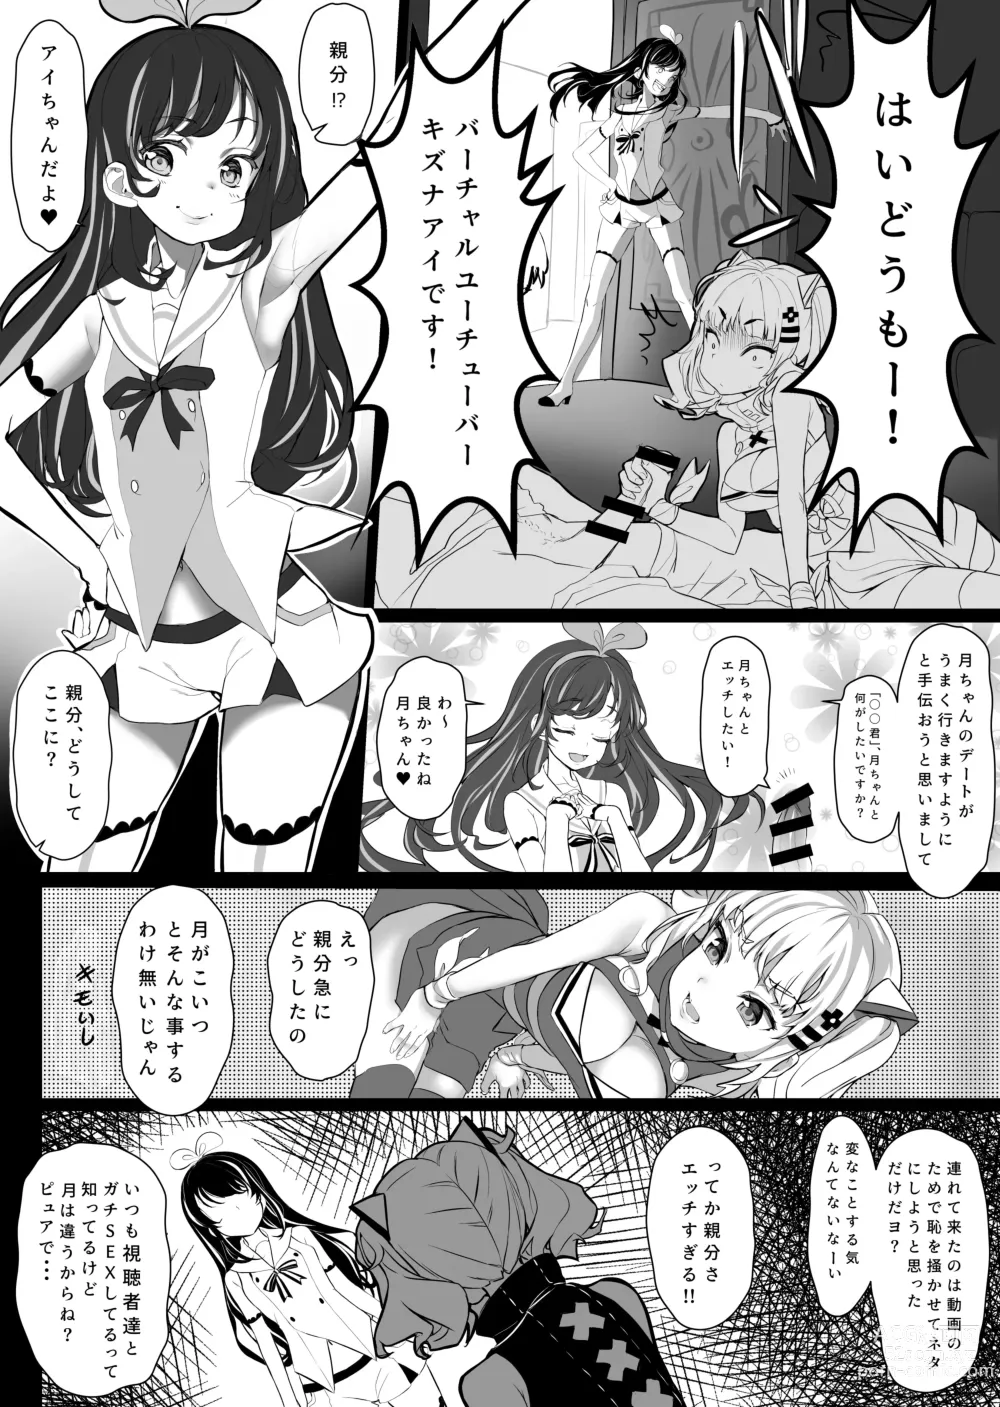 Page 7 of doujinshi Virtual-chan o karaokebokkusu de XX